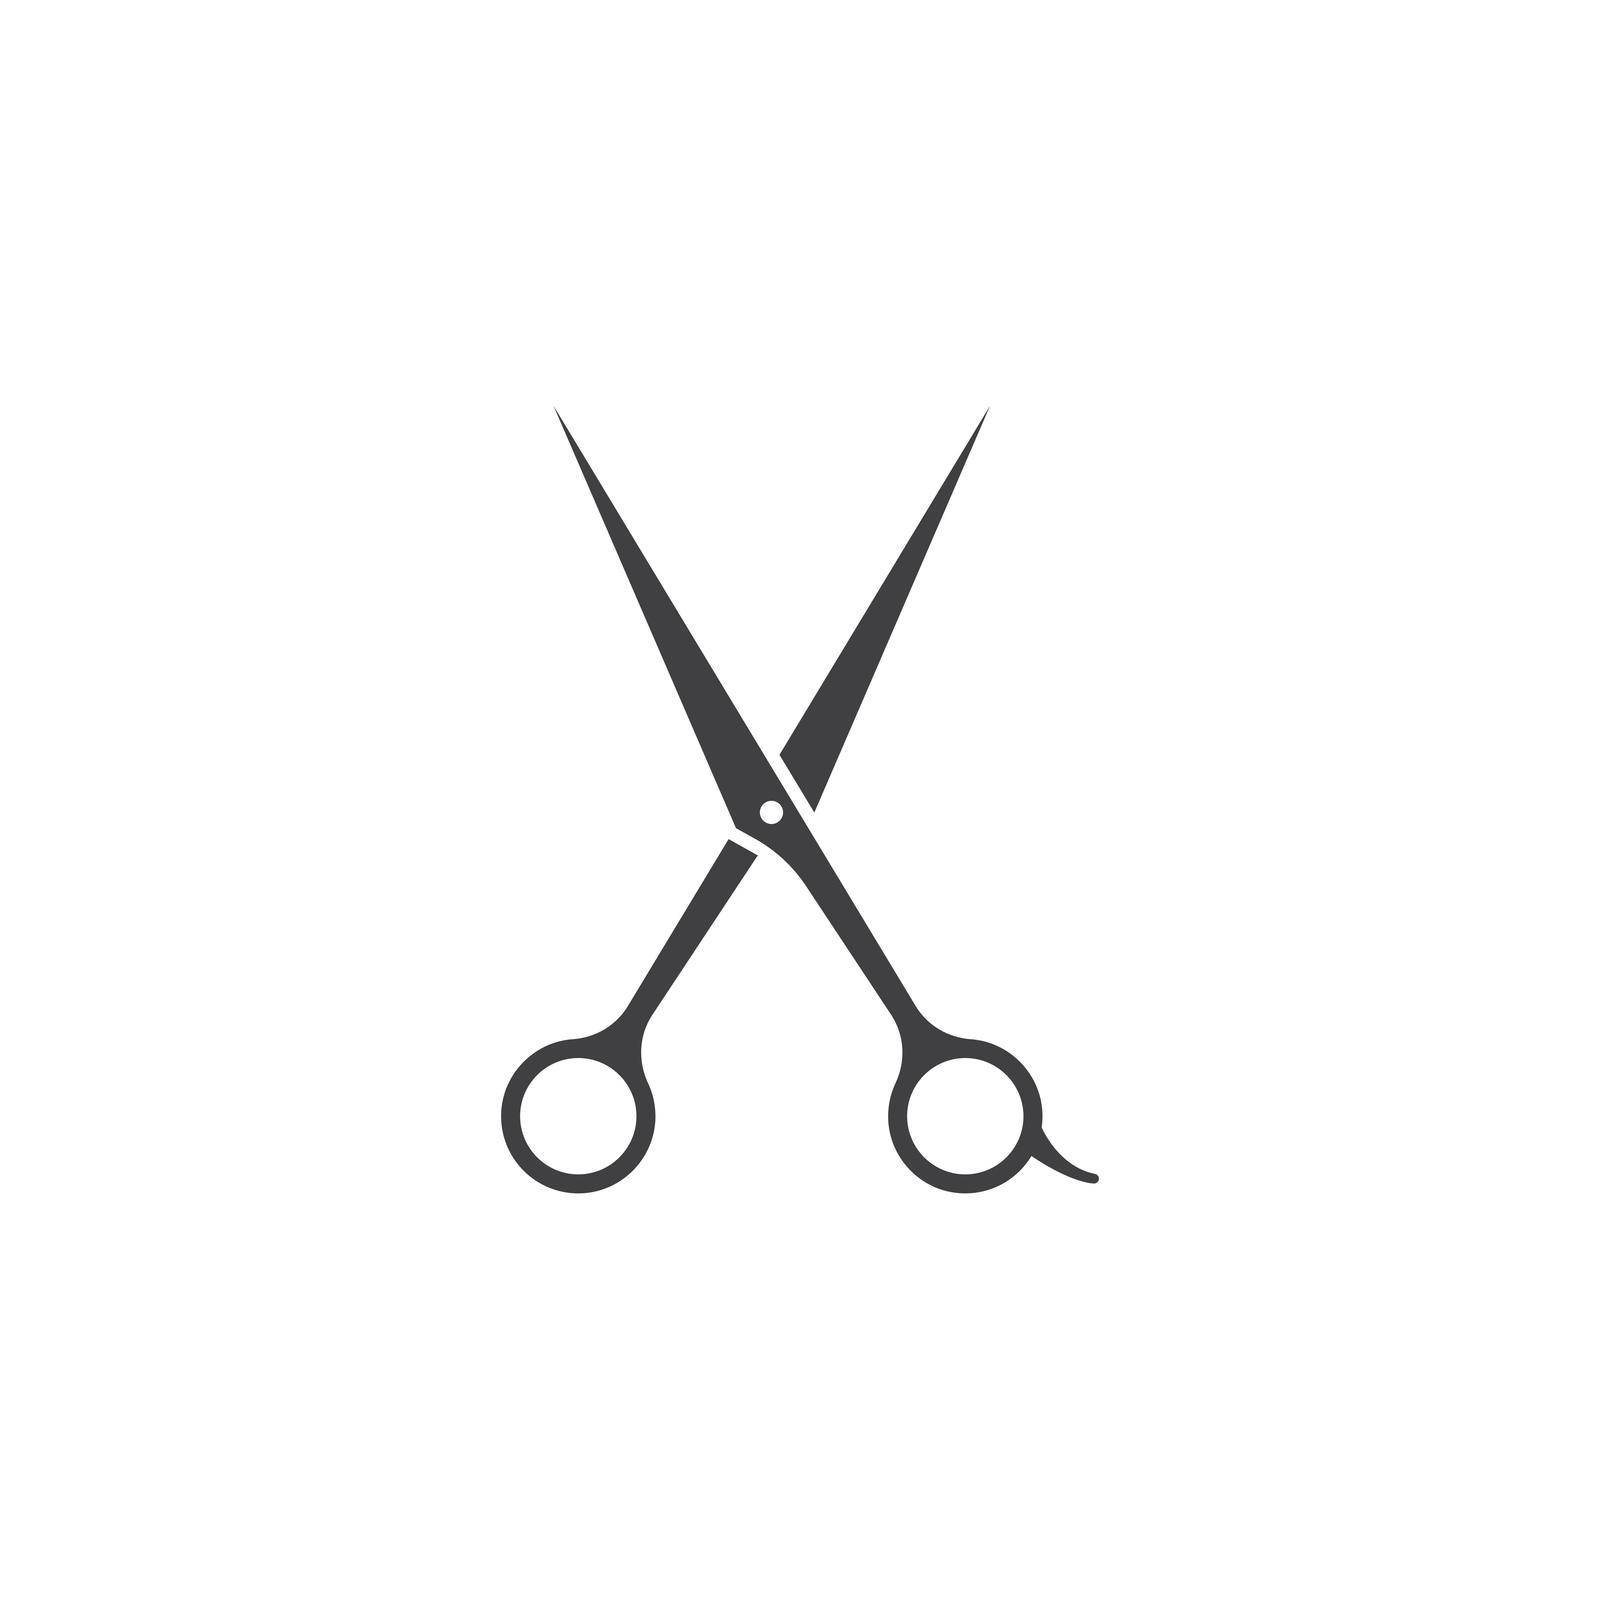 Scissor icon ilustration vector template